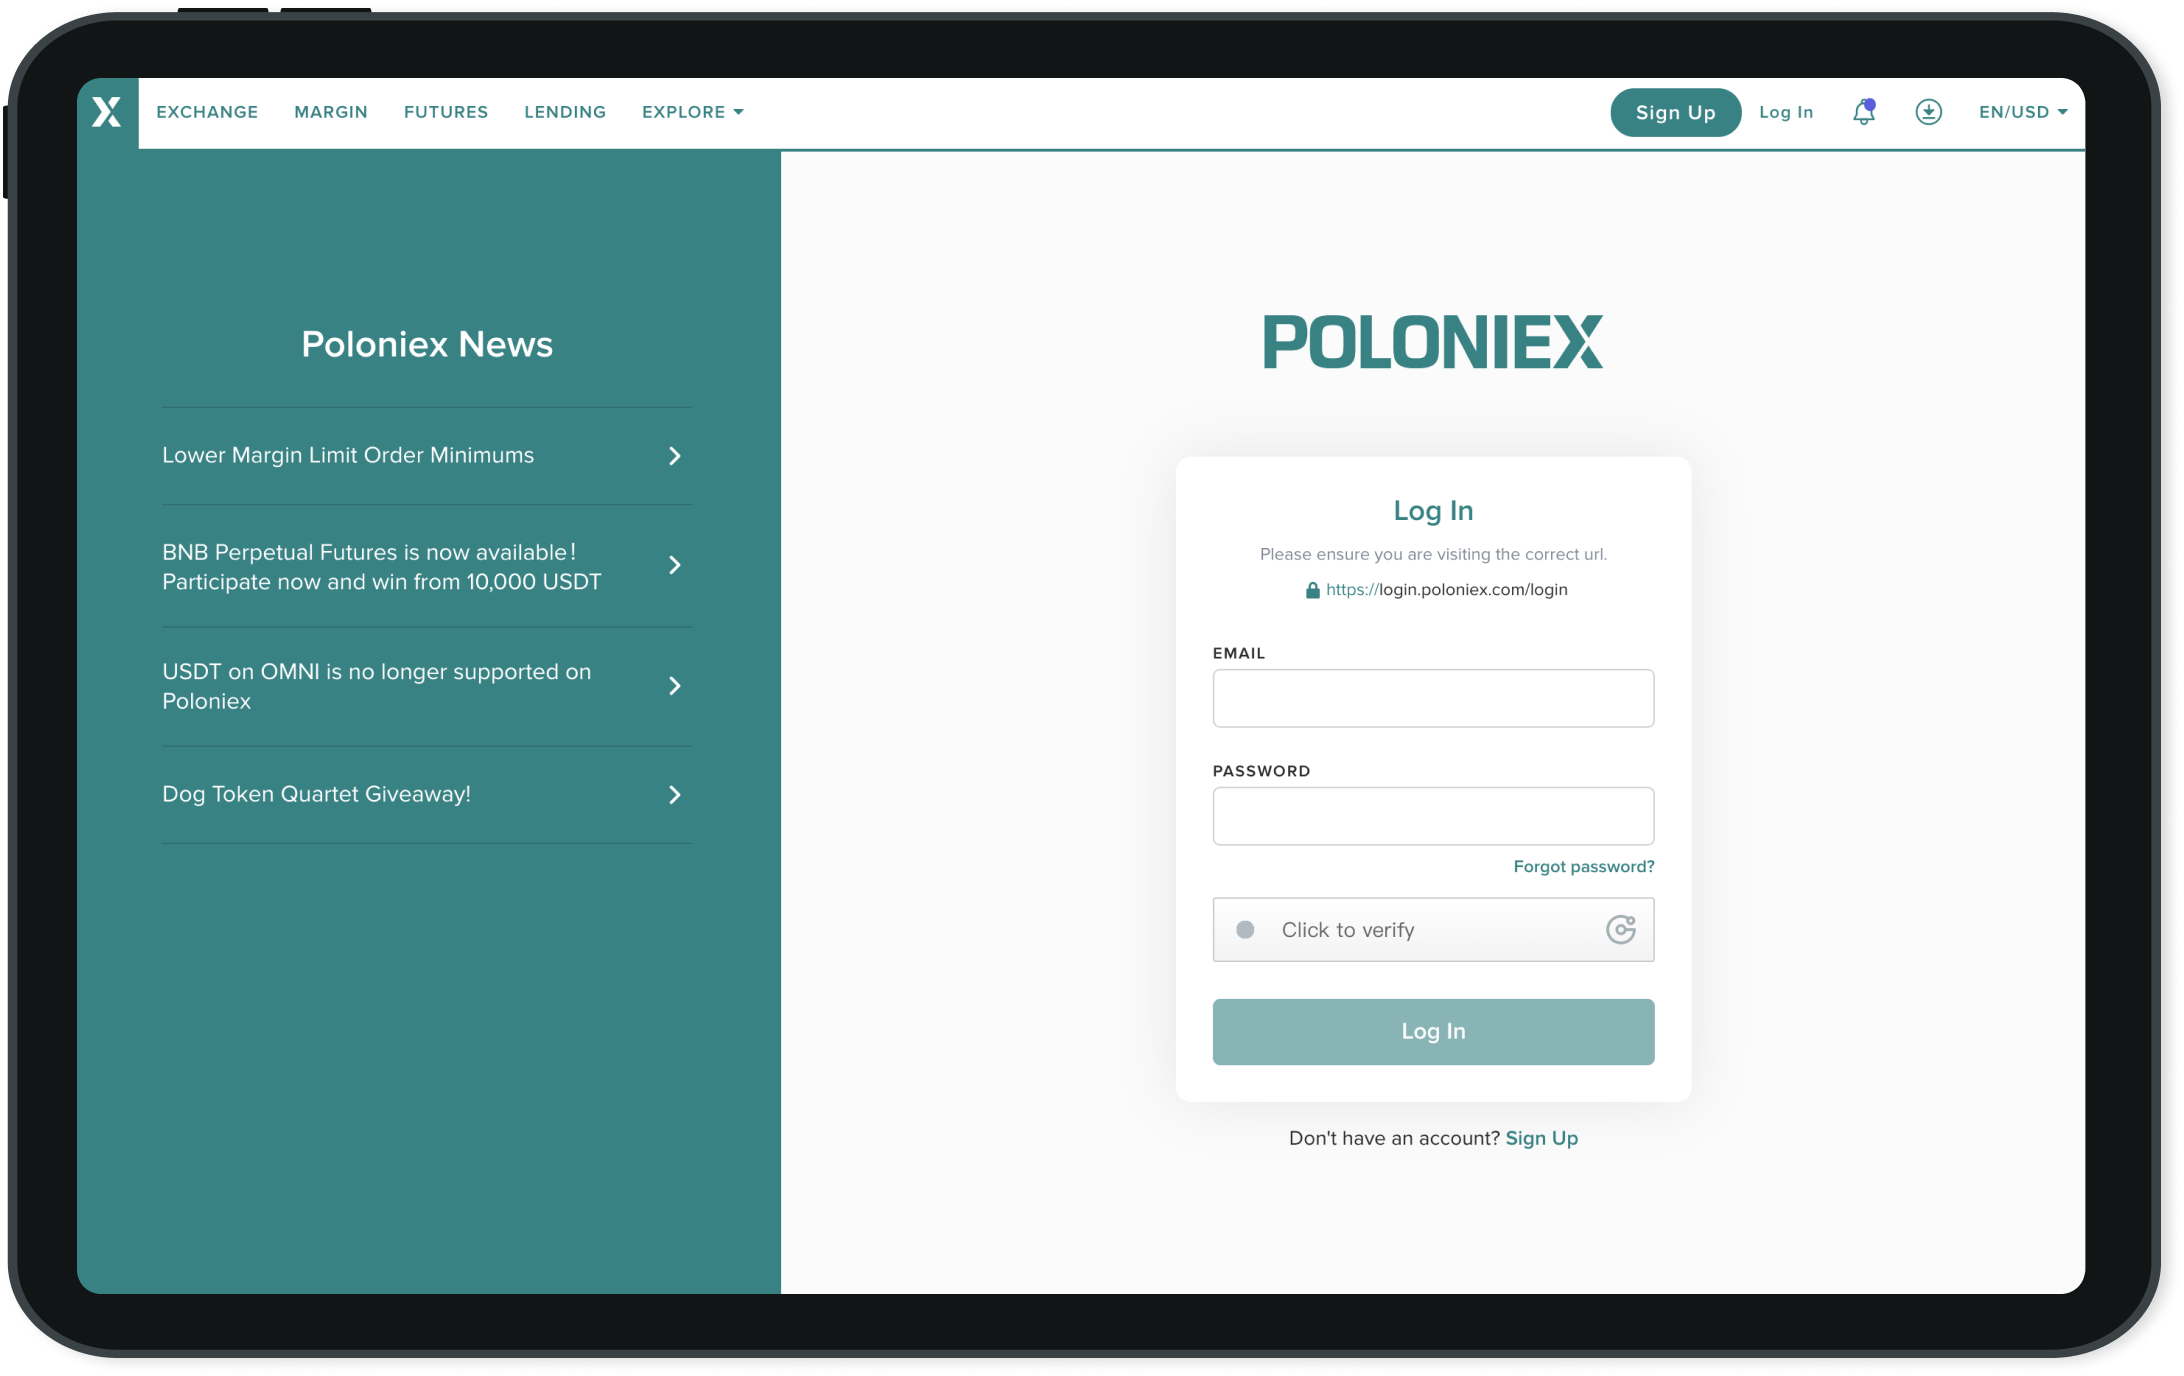 Buy Verified Poloniex Account